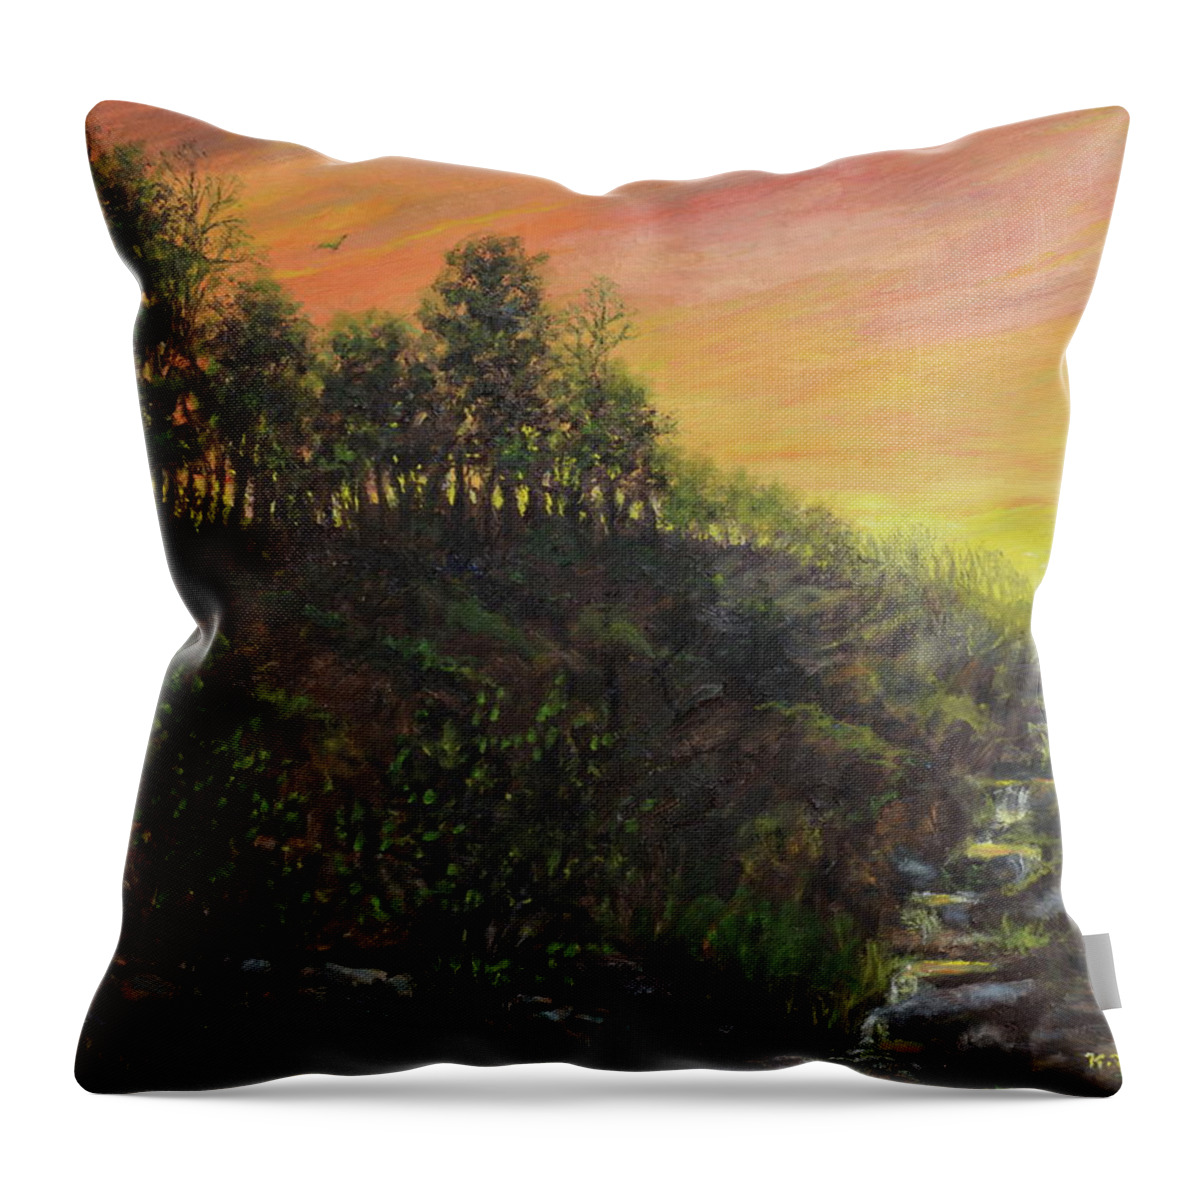 Sunset Throw Pillow featuring the painting West Ridge Sundown by Kathleen McDermott